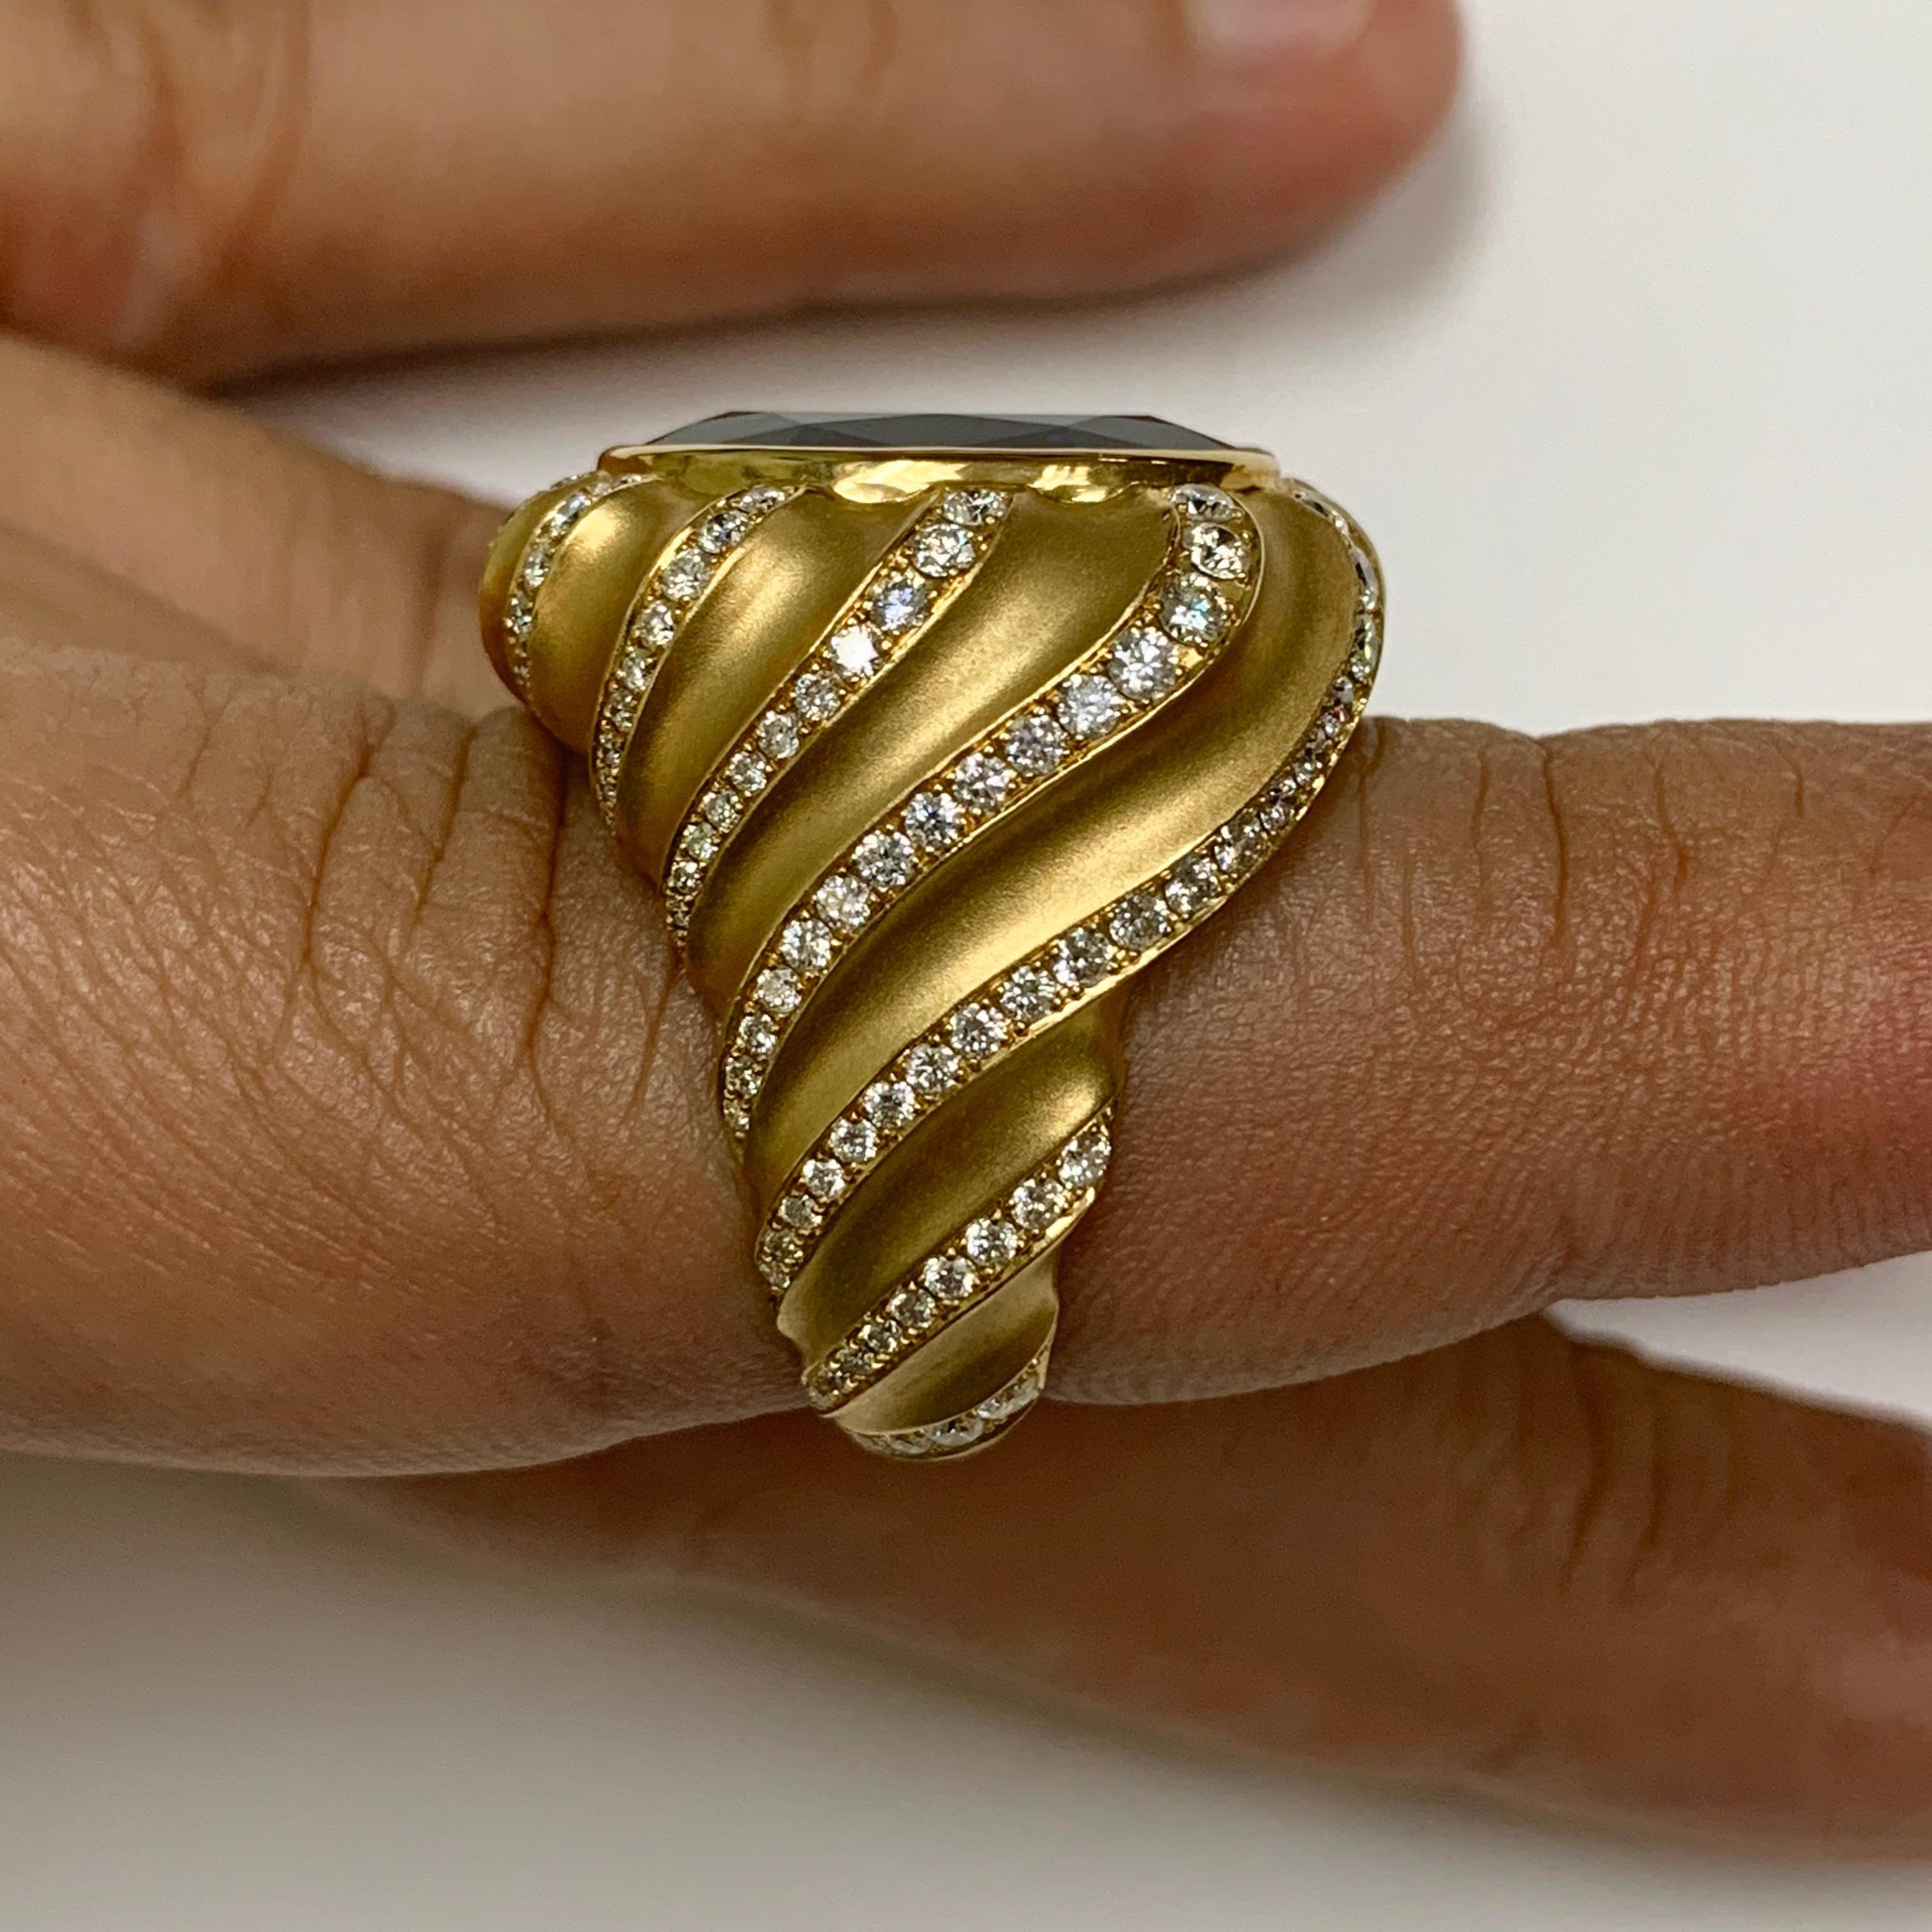 Tanzanite 15.86 Carat Diamond 18 Karat Yellow Gold Ring For Sale 3